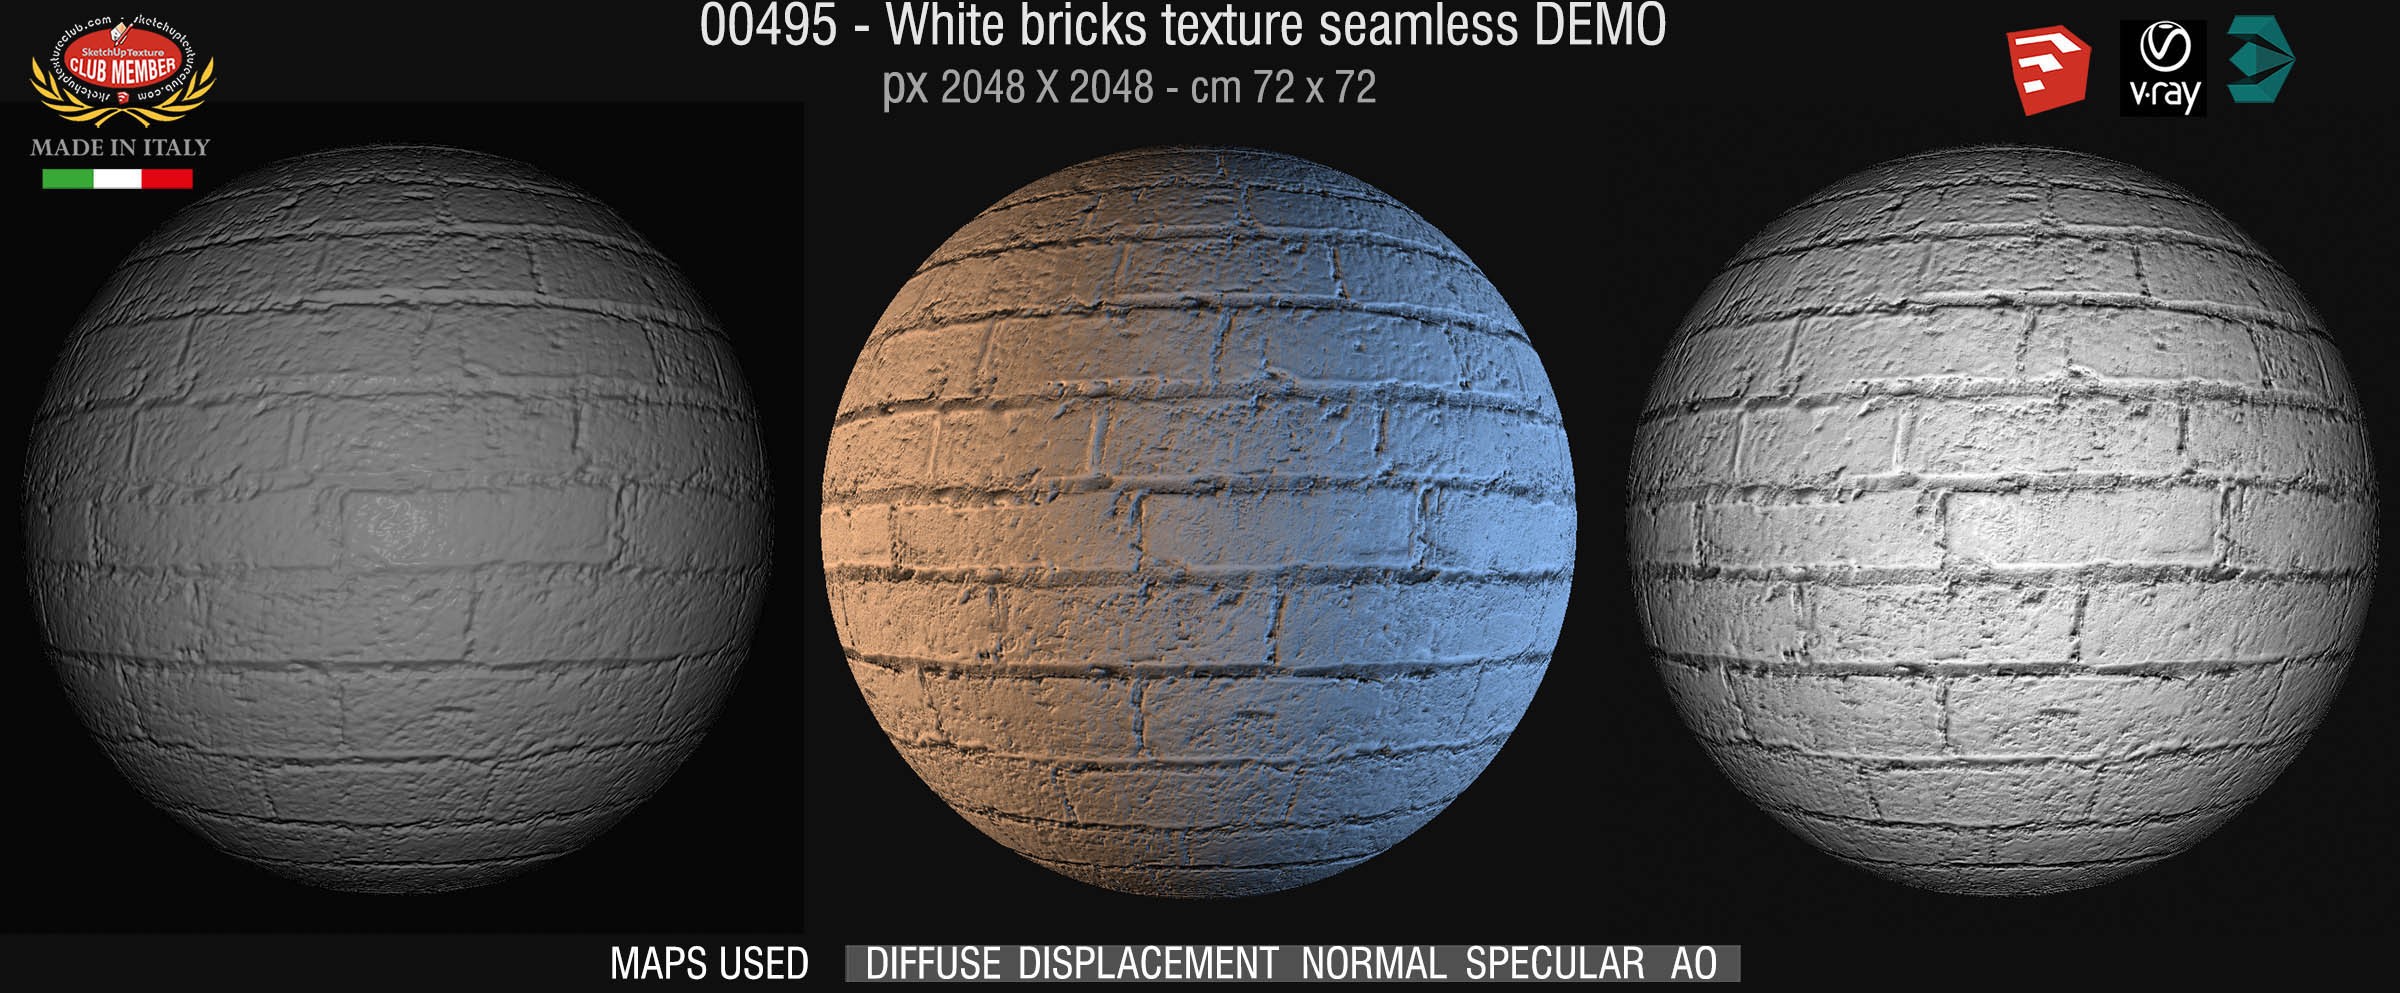 00495 White bricks texture seamless + maps DEMO